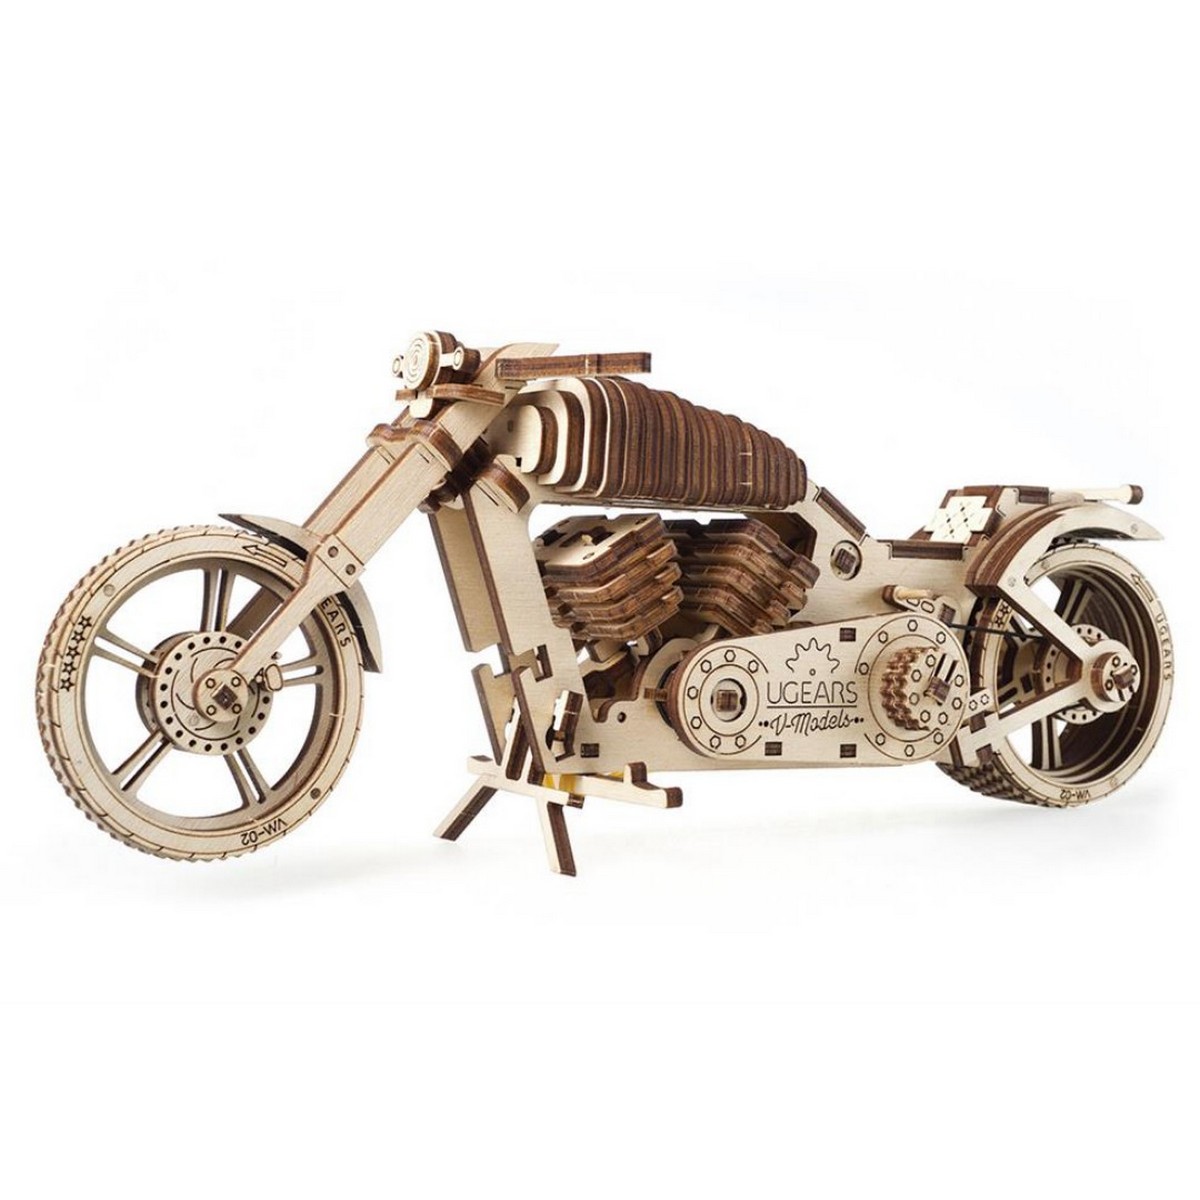 UGEARS maquette en bois pour adulte moto. une idee cadeau chez ugo et lea   (5)